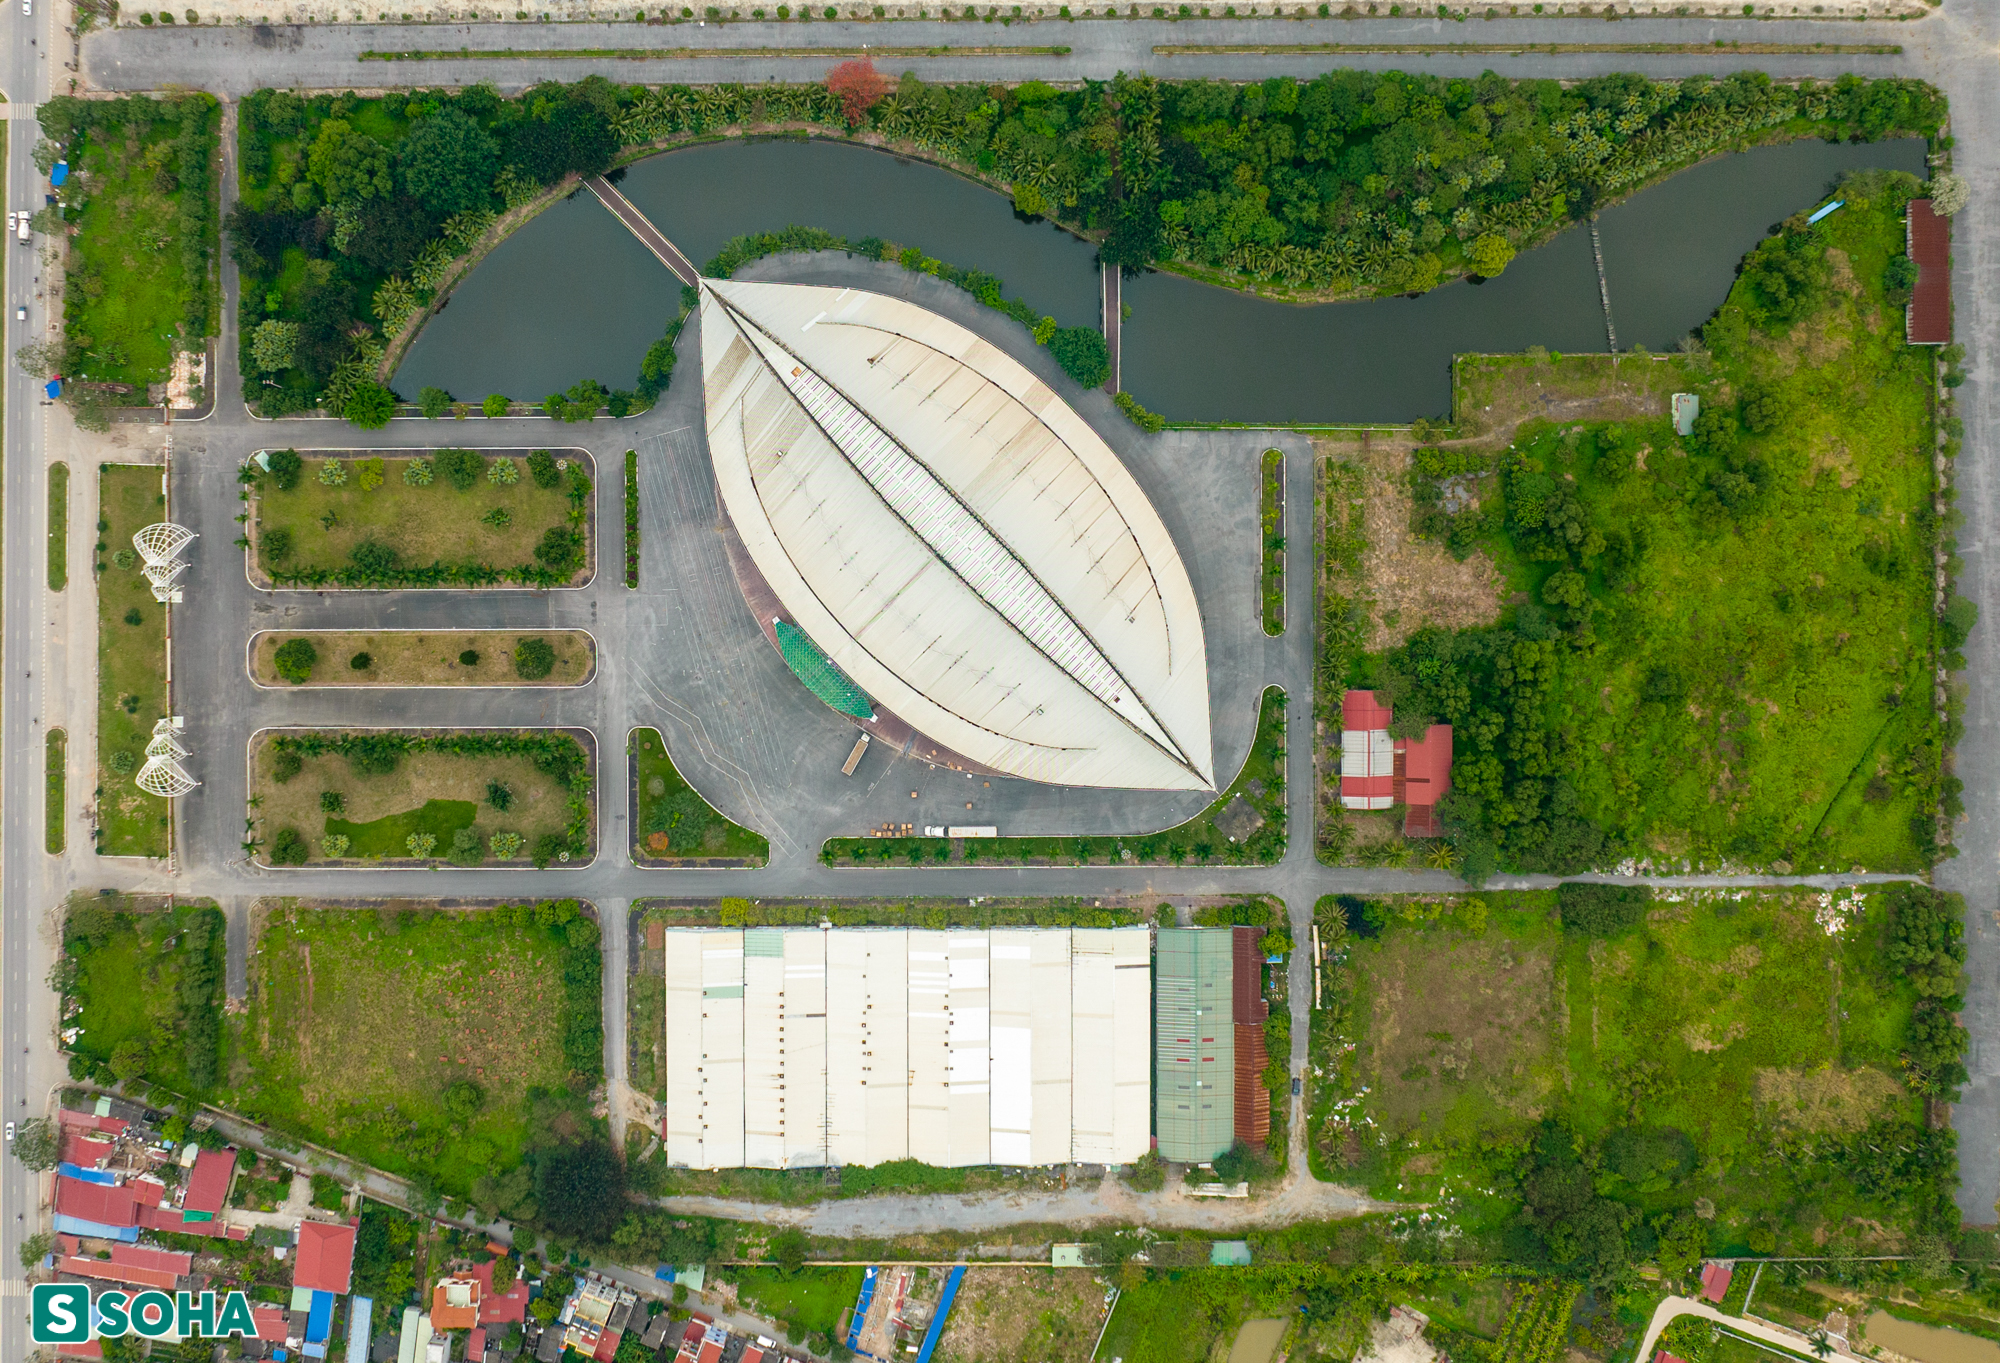  Nhà cánh diều ở Hải Phòng: Công trình trăm tỷ hoá thành nhà kho - Ảnh 13.